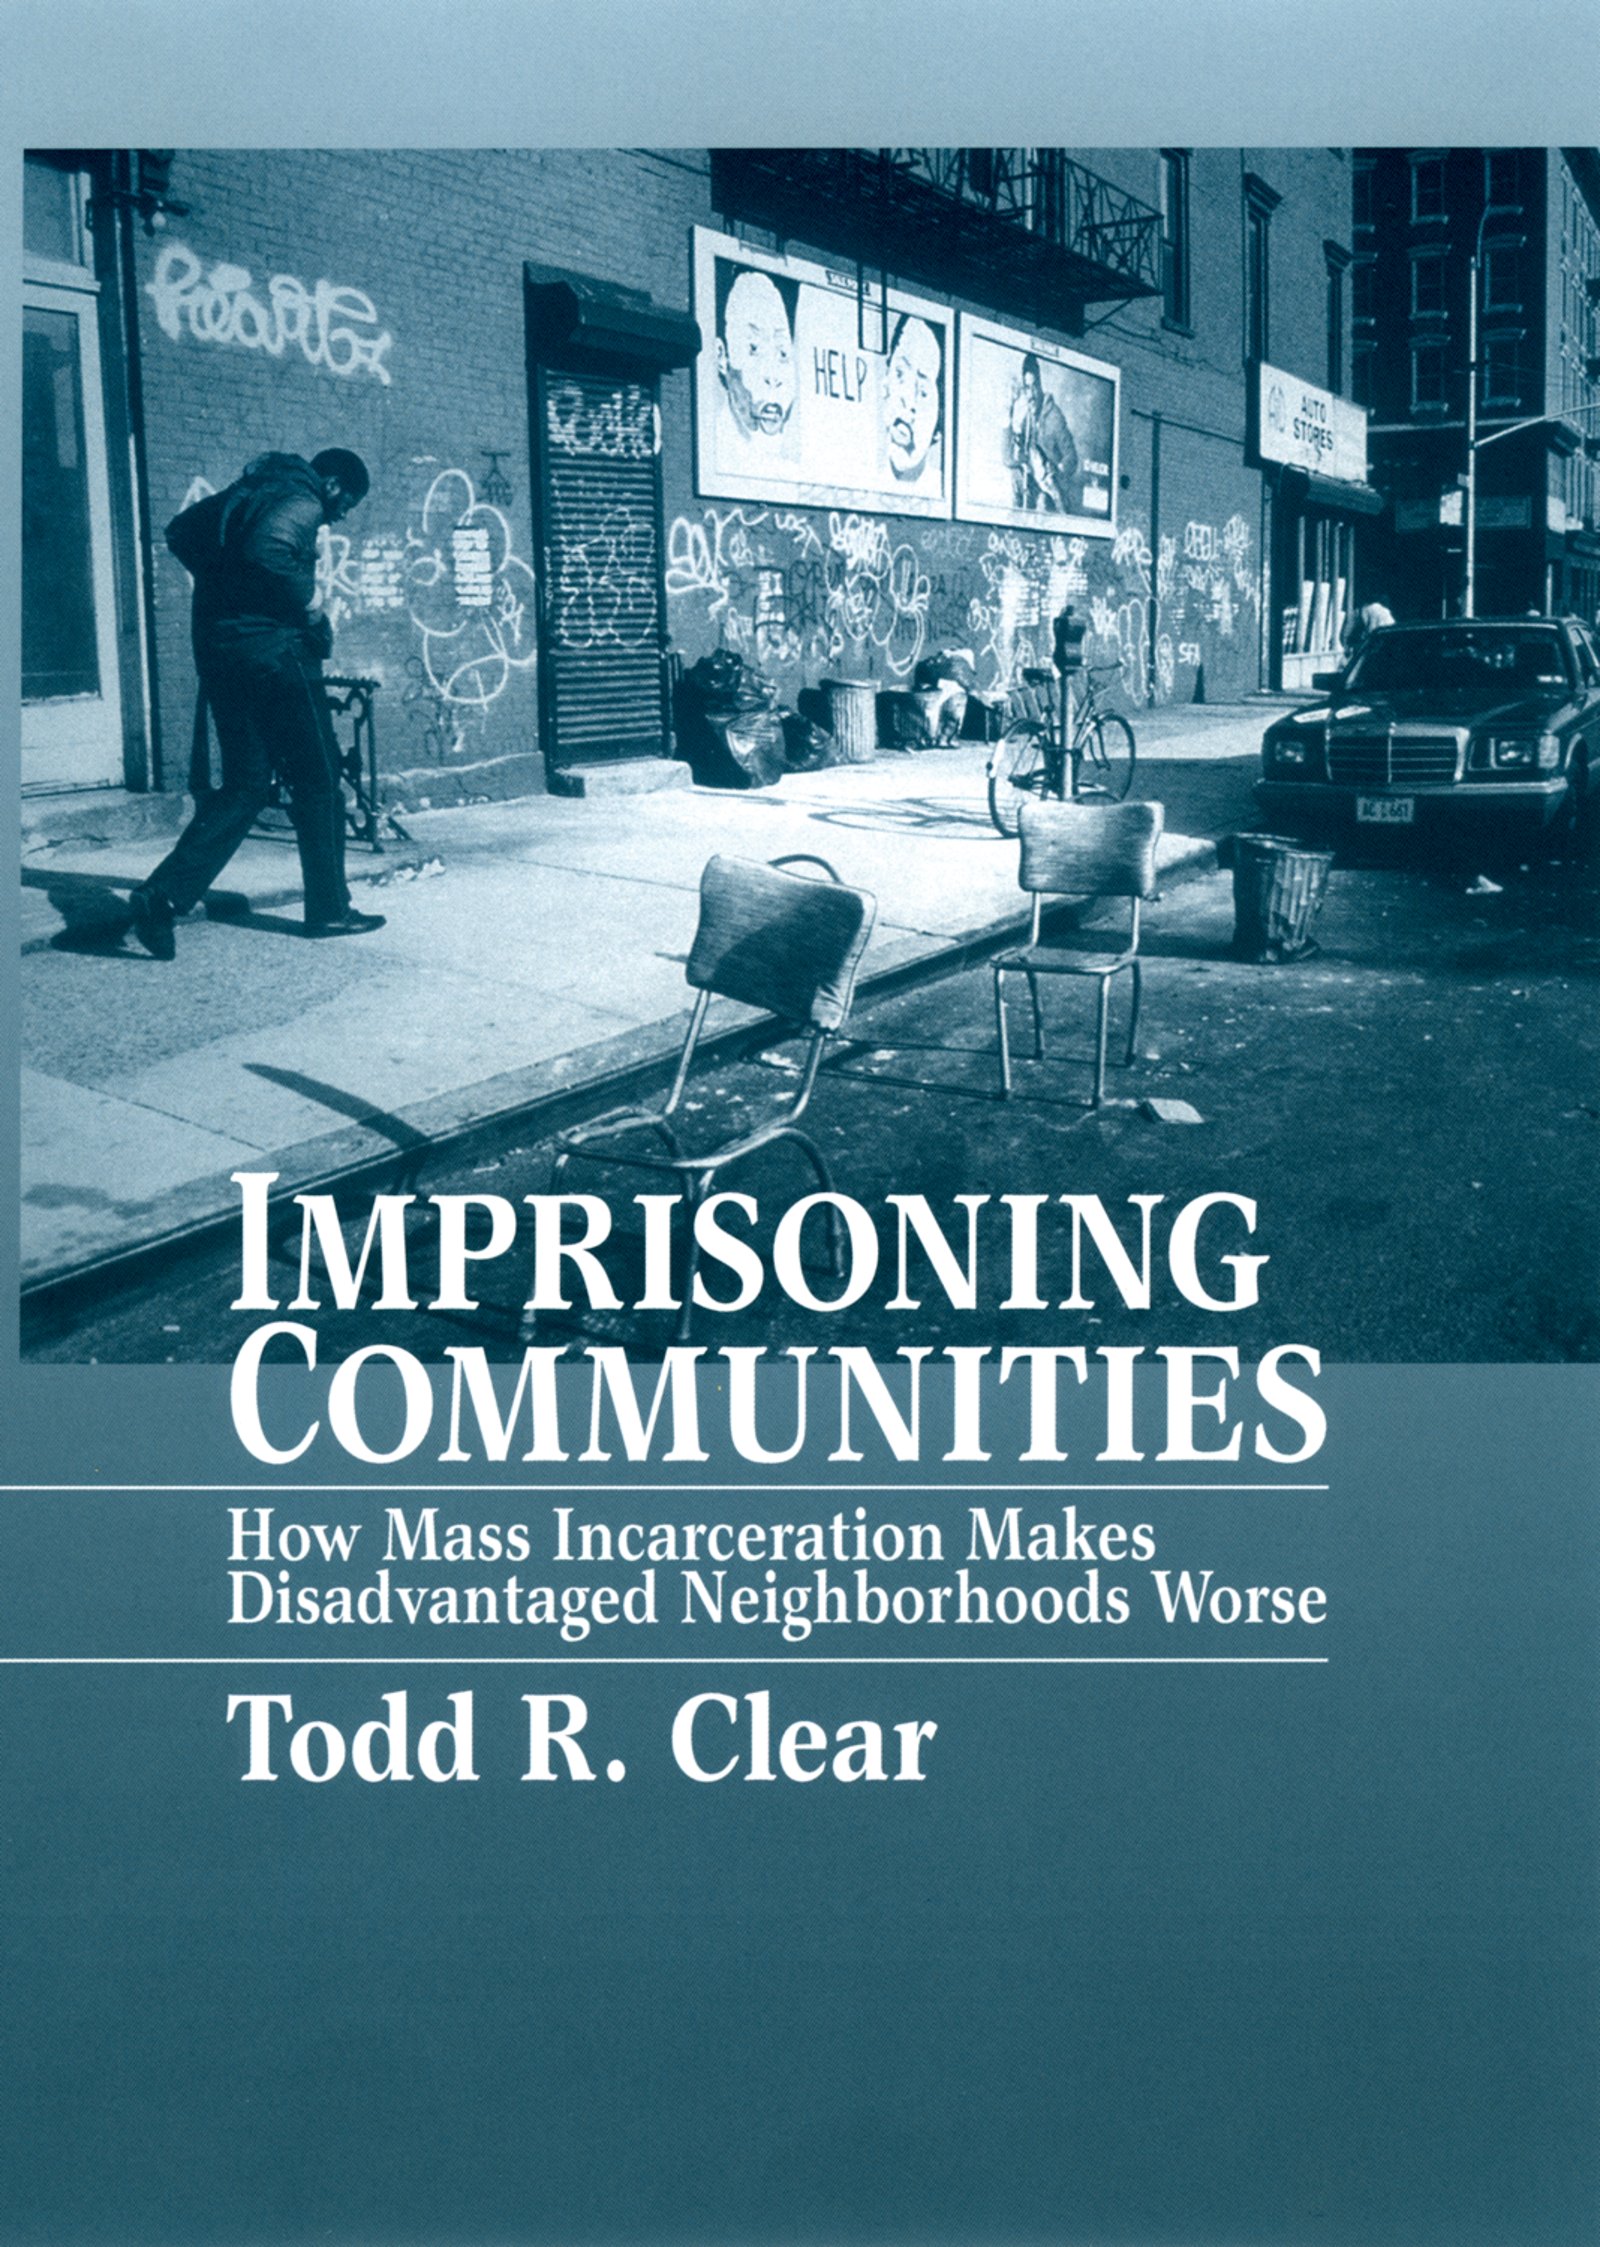 Imprisoning Communities - 15-24.99